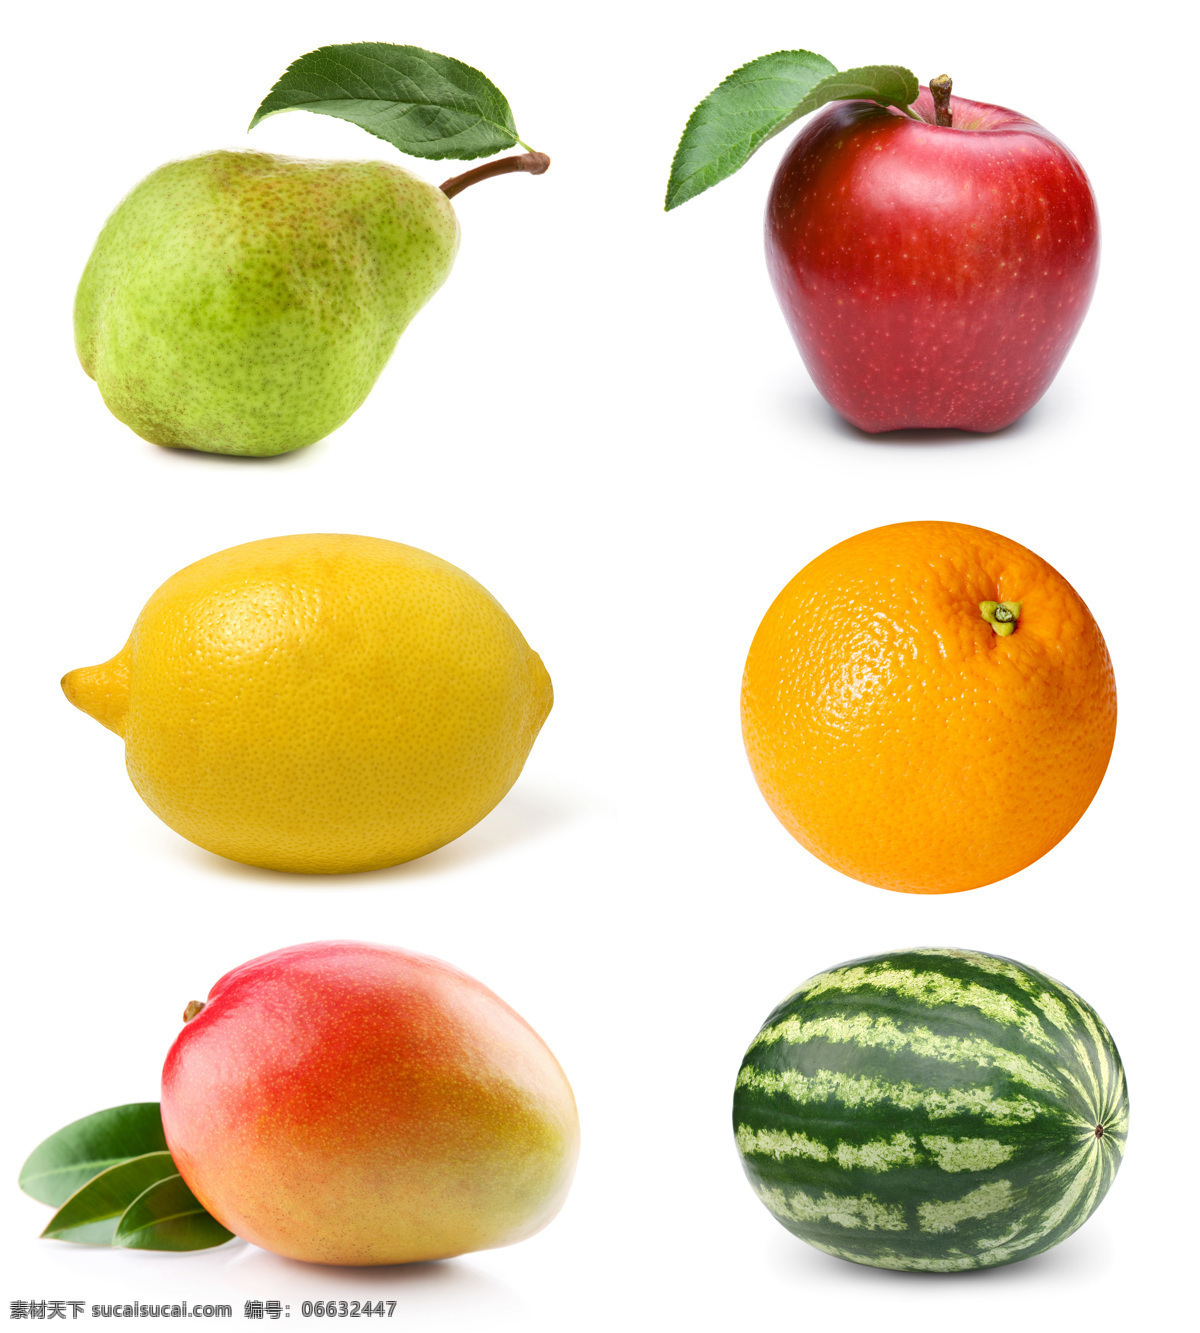 各种 水果 梨 苹果 柠檬 西瓜 橙 芒果 新鲜 新鲜水果 果实 水果摄影 绿叶 水果图片 餐饮美食